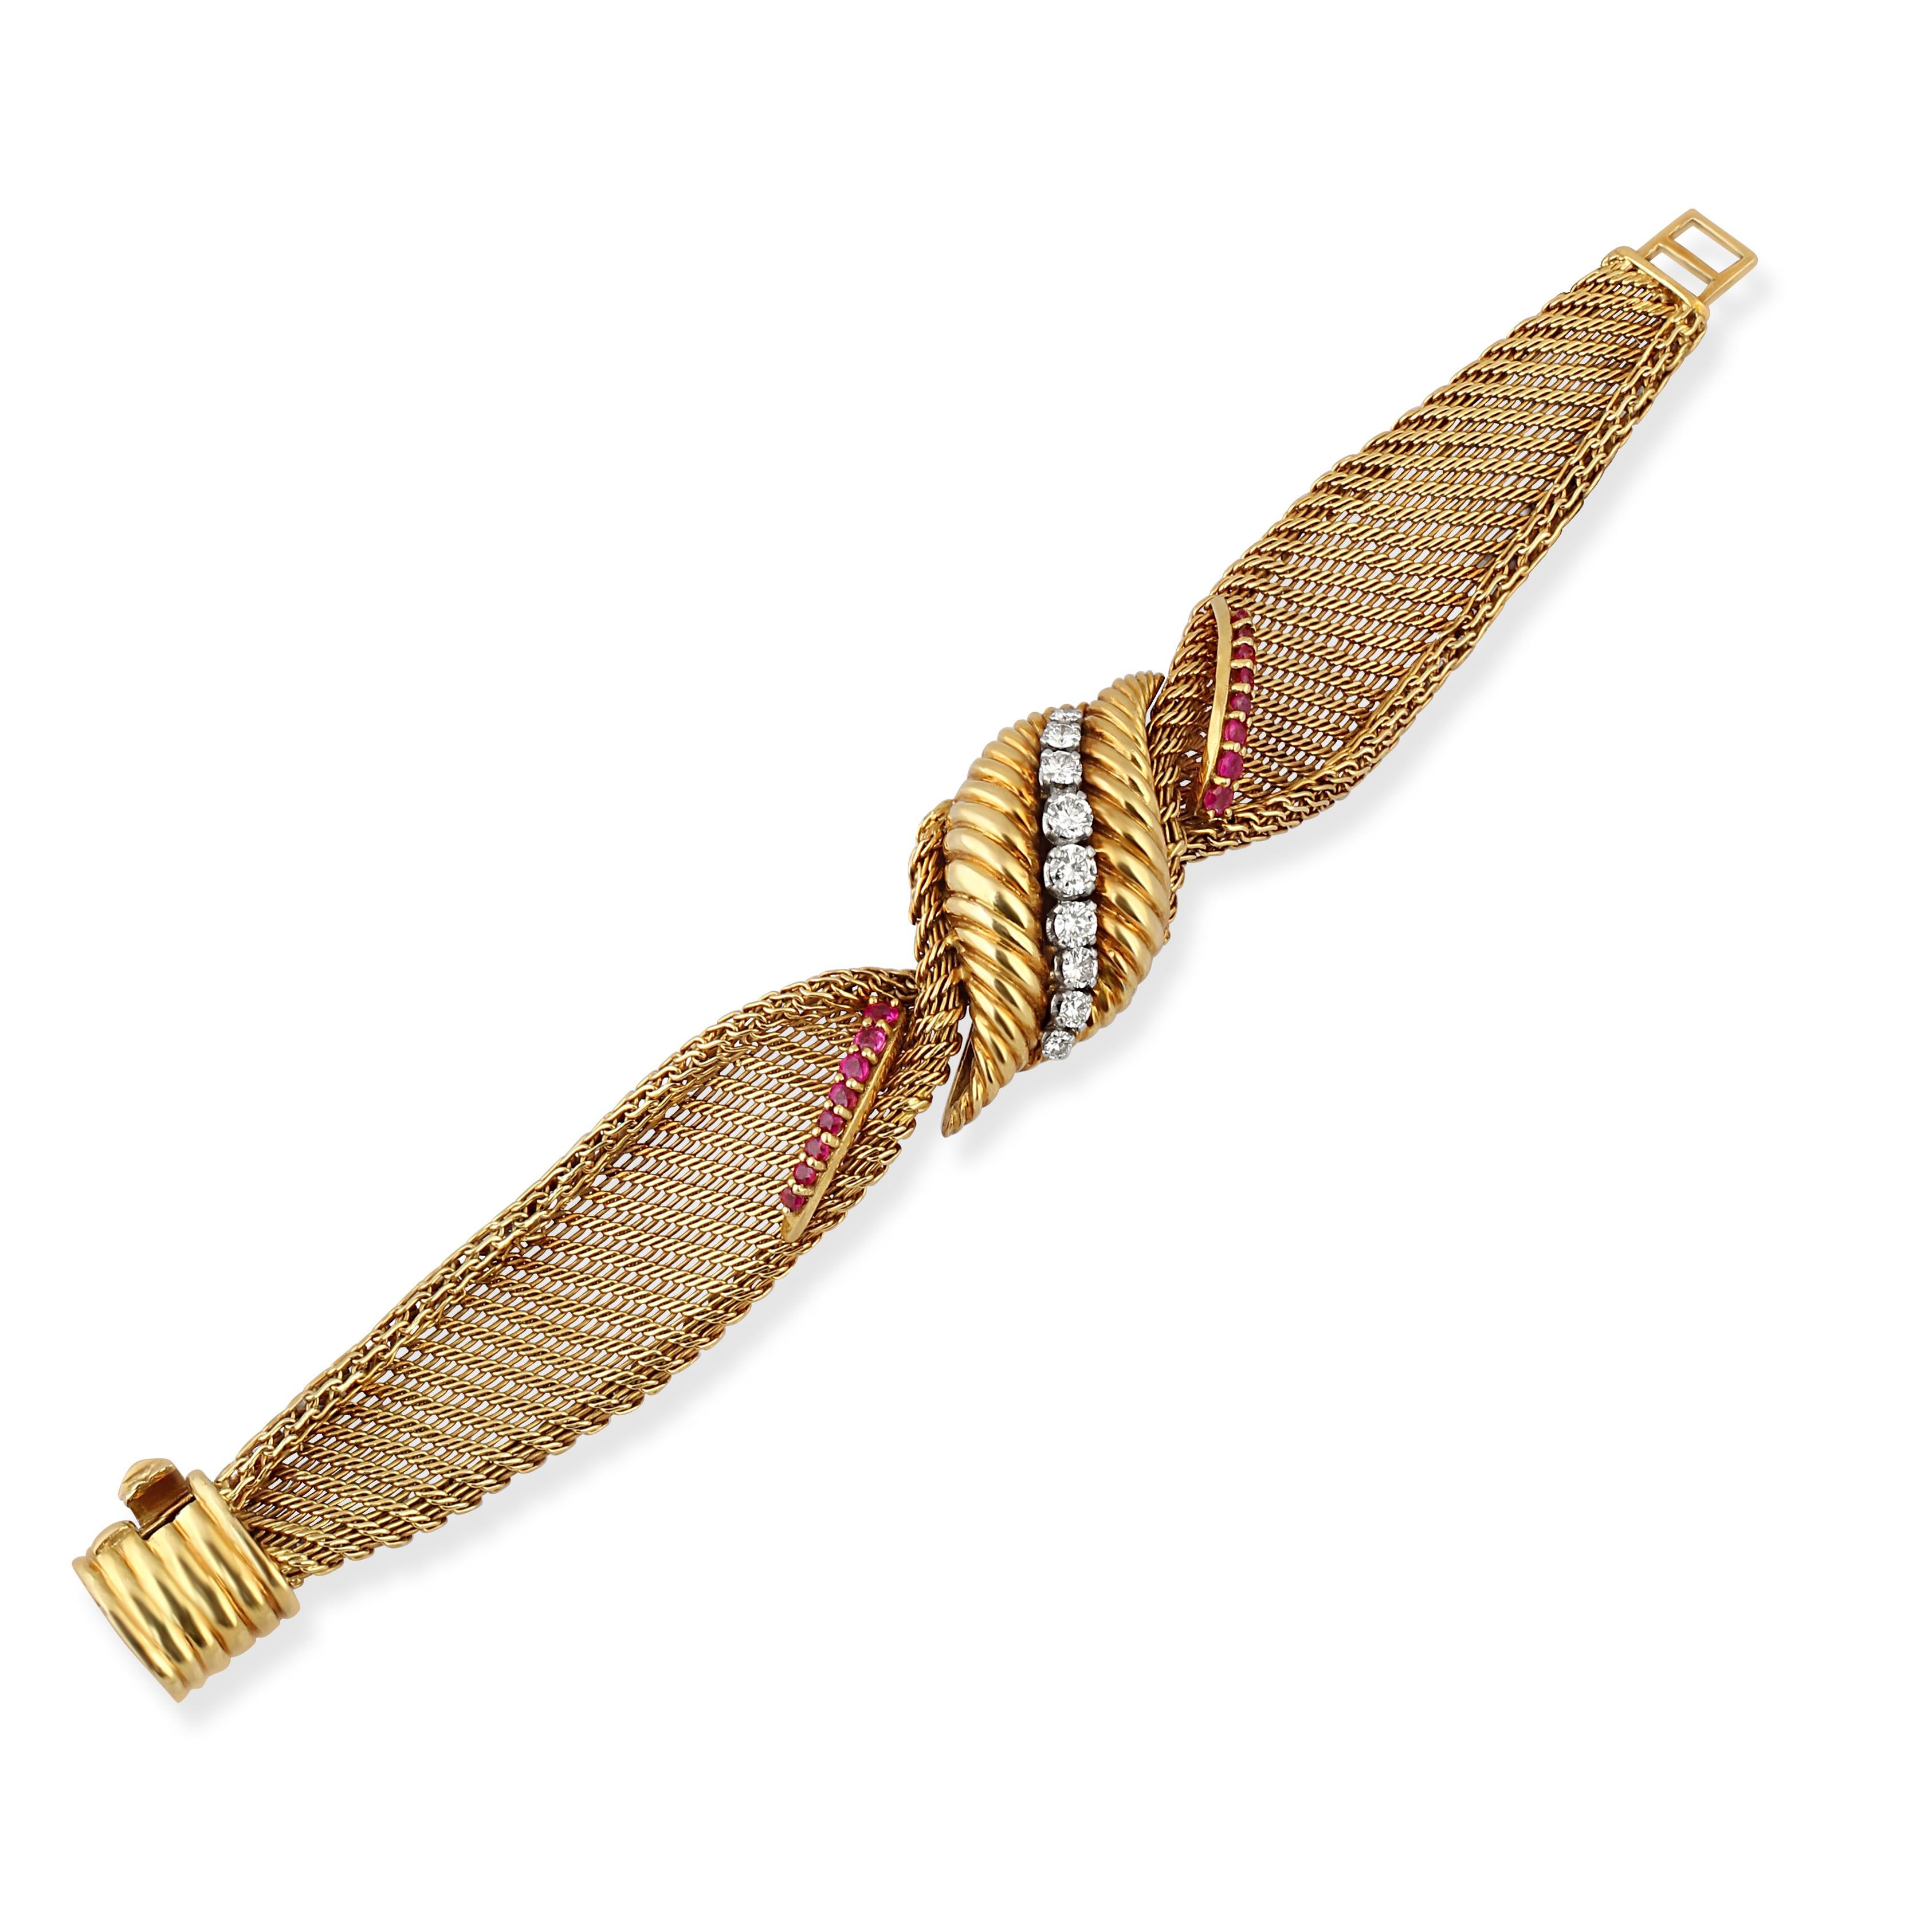 Bracelet en or 18k avec un design en maille et une pièce centrale torsadée sertie de diamants et de rubis taillés en cercle.

Longueur : 19cm
Poids : 59gr
